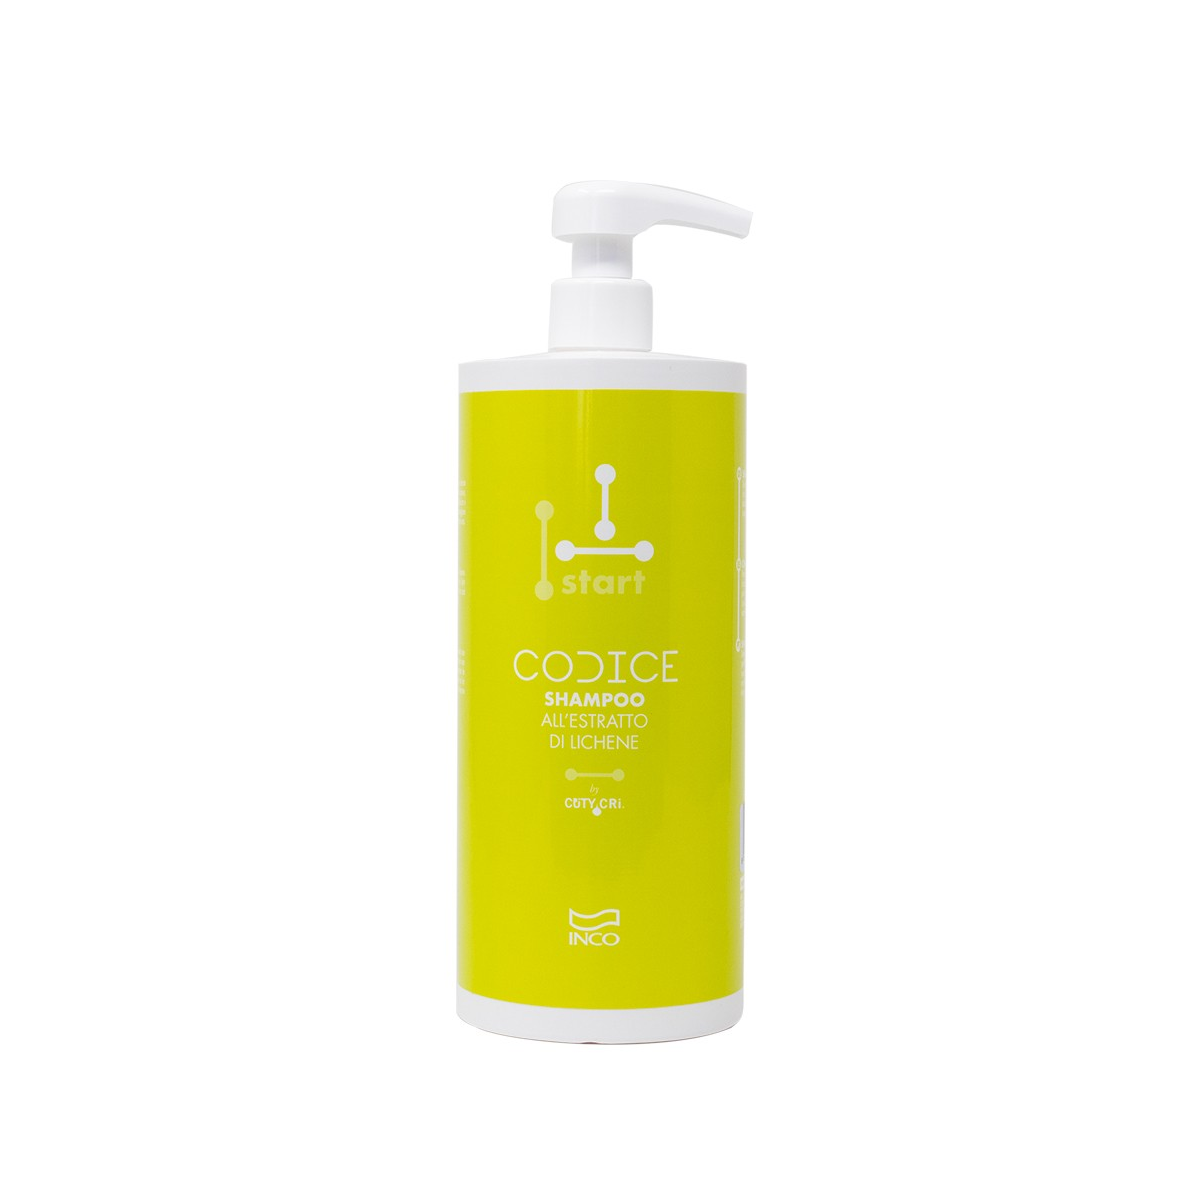 INCO - CODICE START SHAMPOO ESTRATTO LICHENE (1000ml) Shampoo estratto Lichene